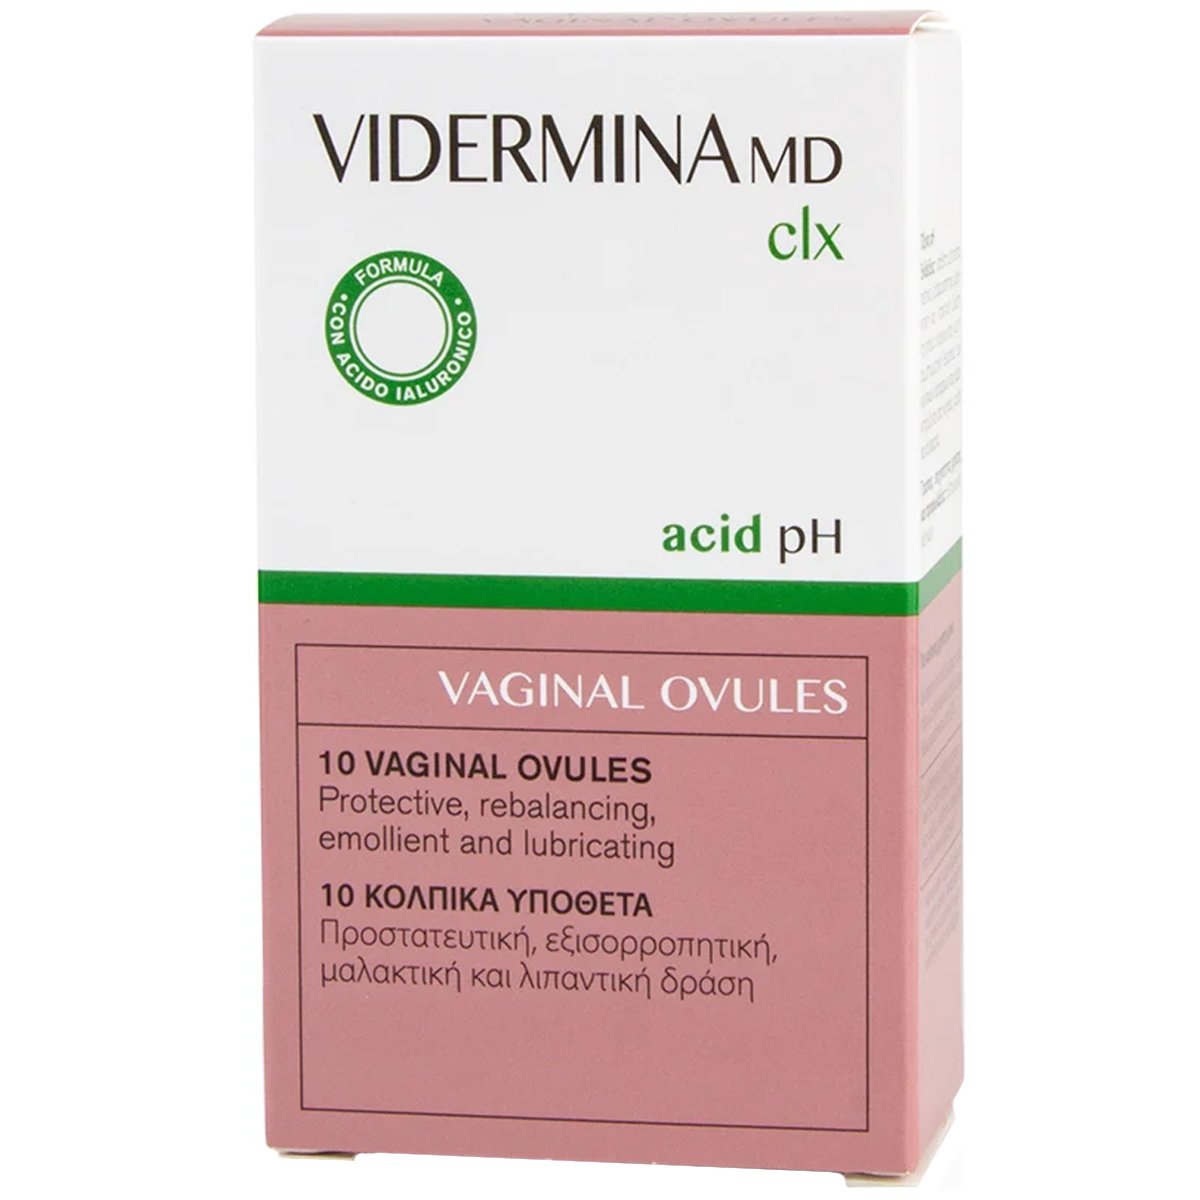 Vidermina Md Clx Vaginal Ovules Υπόθετα για την Αντιμετώπιση των Κολπικών Διαταραχών 10 Τεμάχια 47991